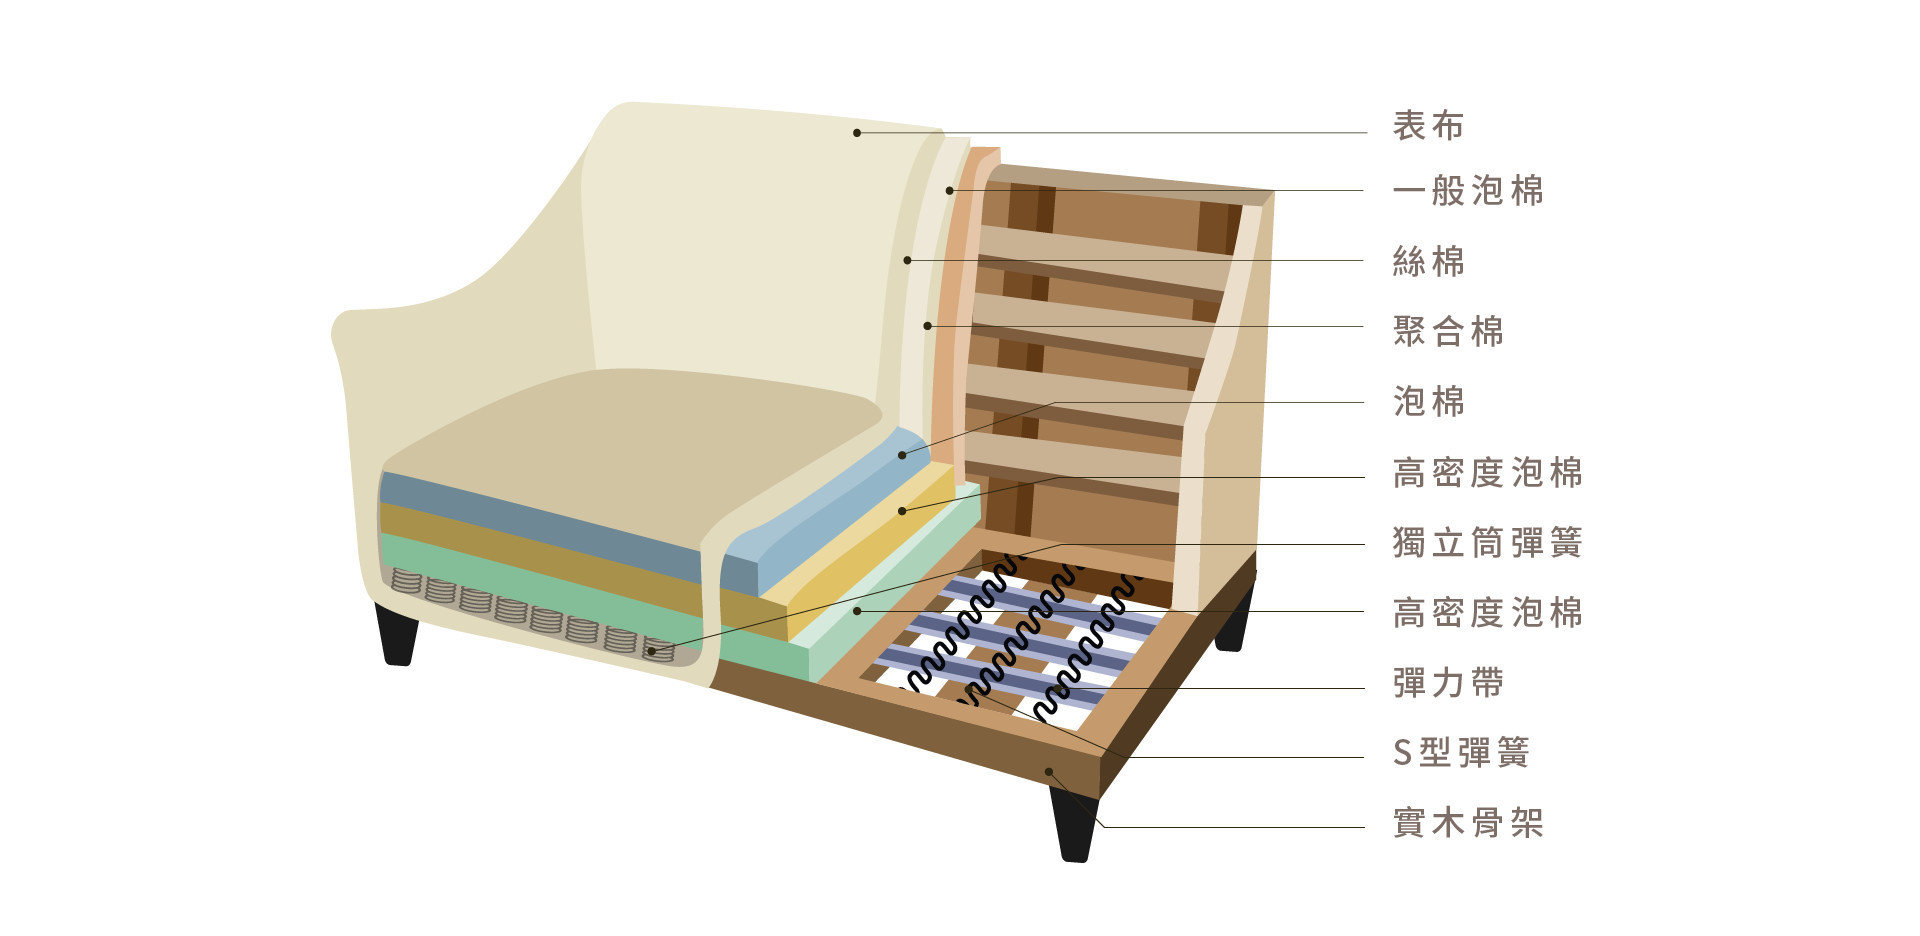 博恩沙發內材結構：高密度泡棉、獨立筒彈簧、實木骨架